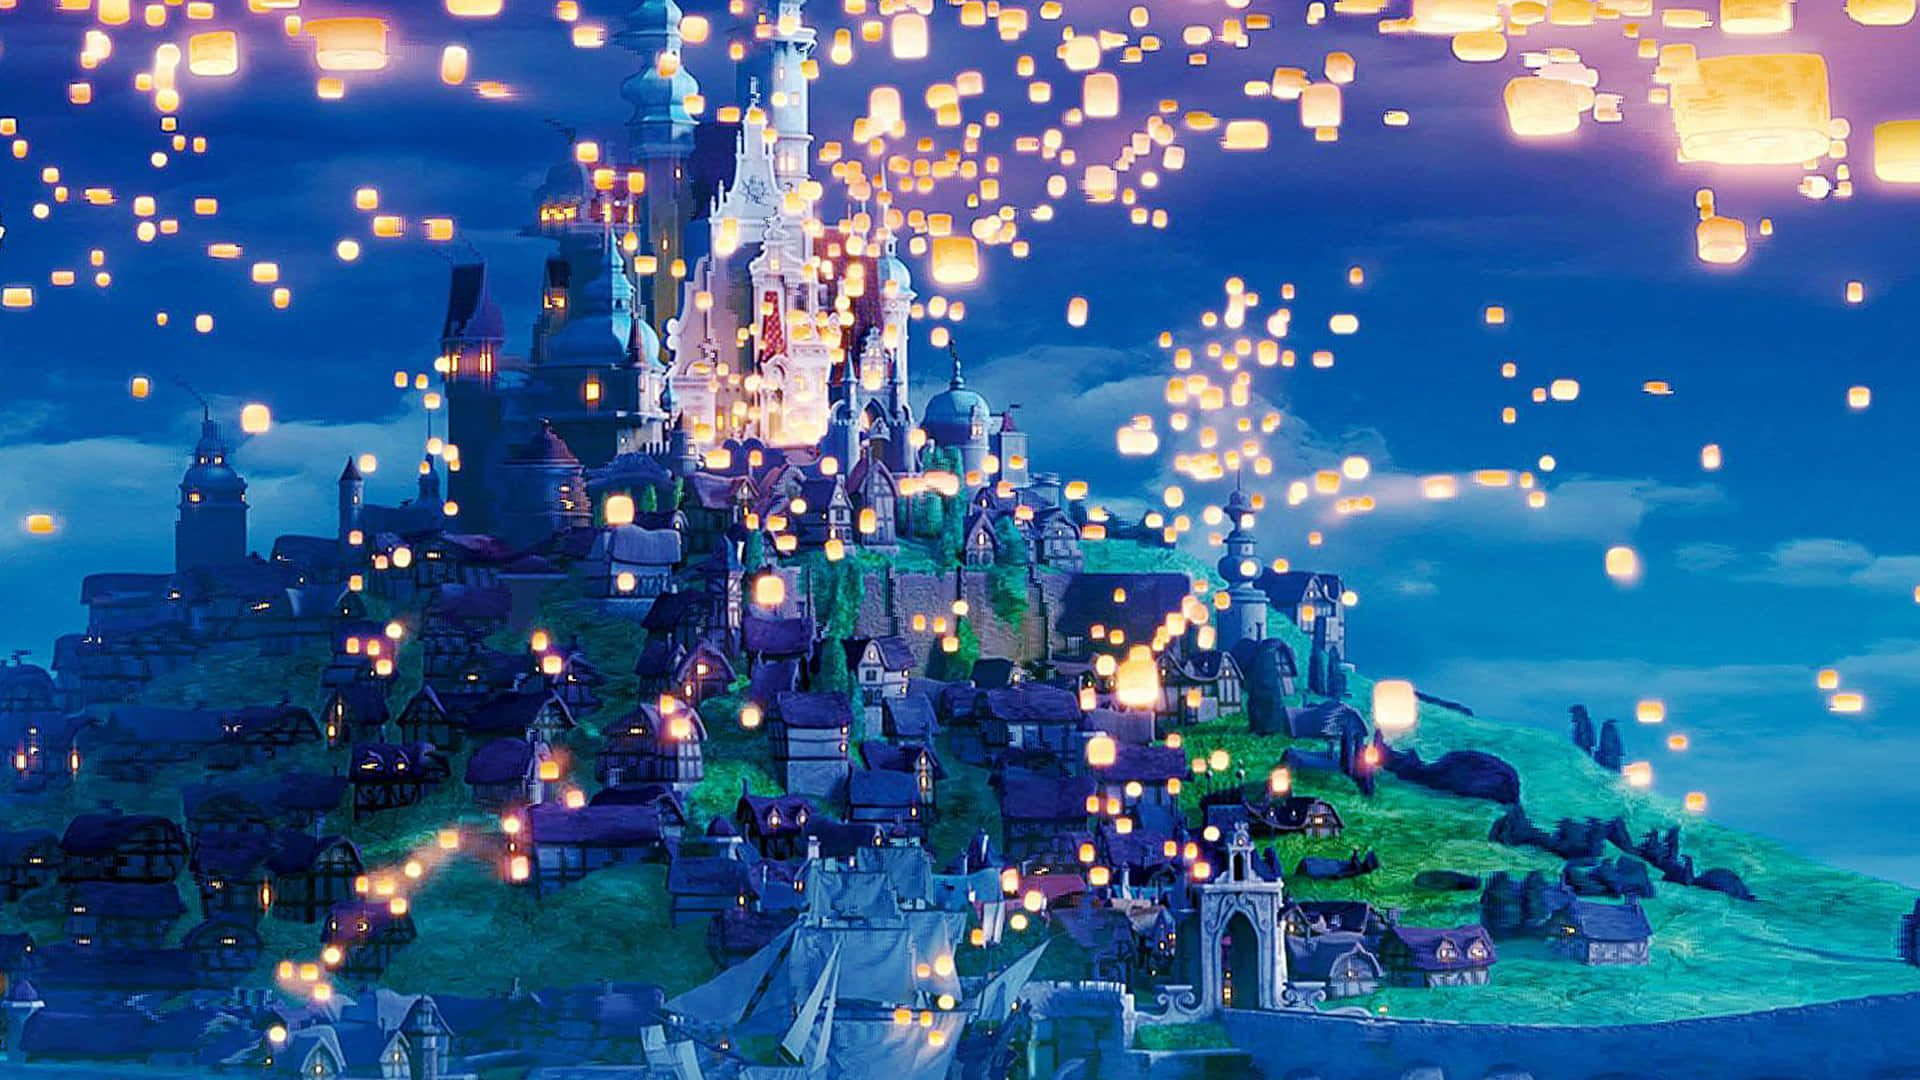 tangled lanterns castle scene